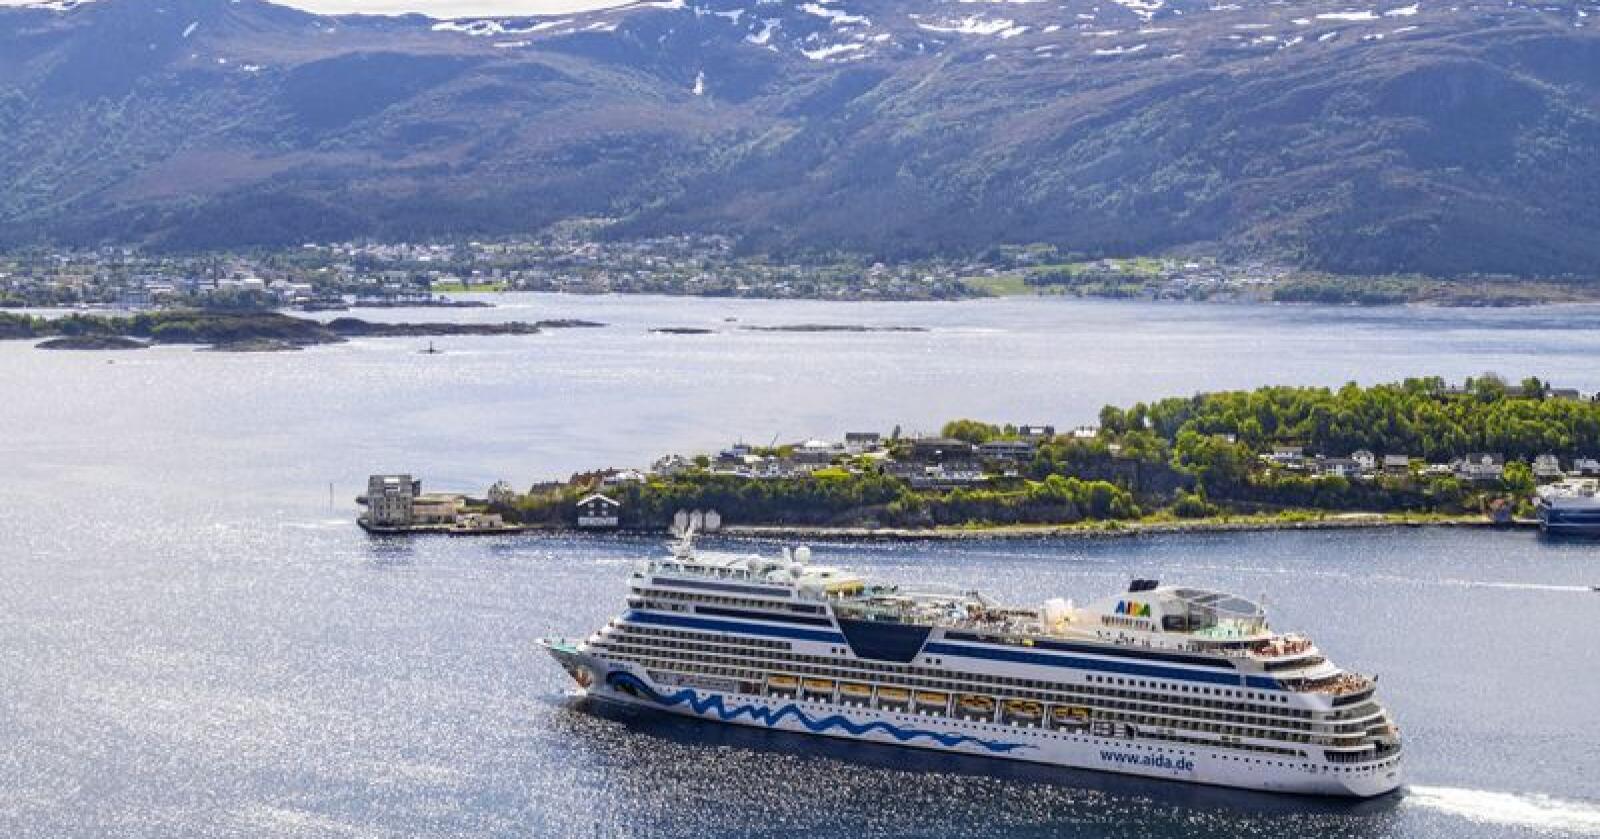 Cruiseskipet AIDAsol frå AIDA Cruises på veg ut frå Ålesund i Møre og Romsdal. Foto: Halvard Alvik / NTB scanpix / NPK